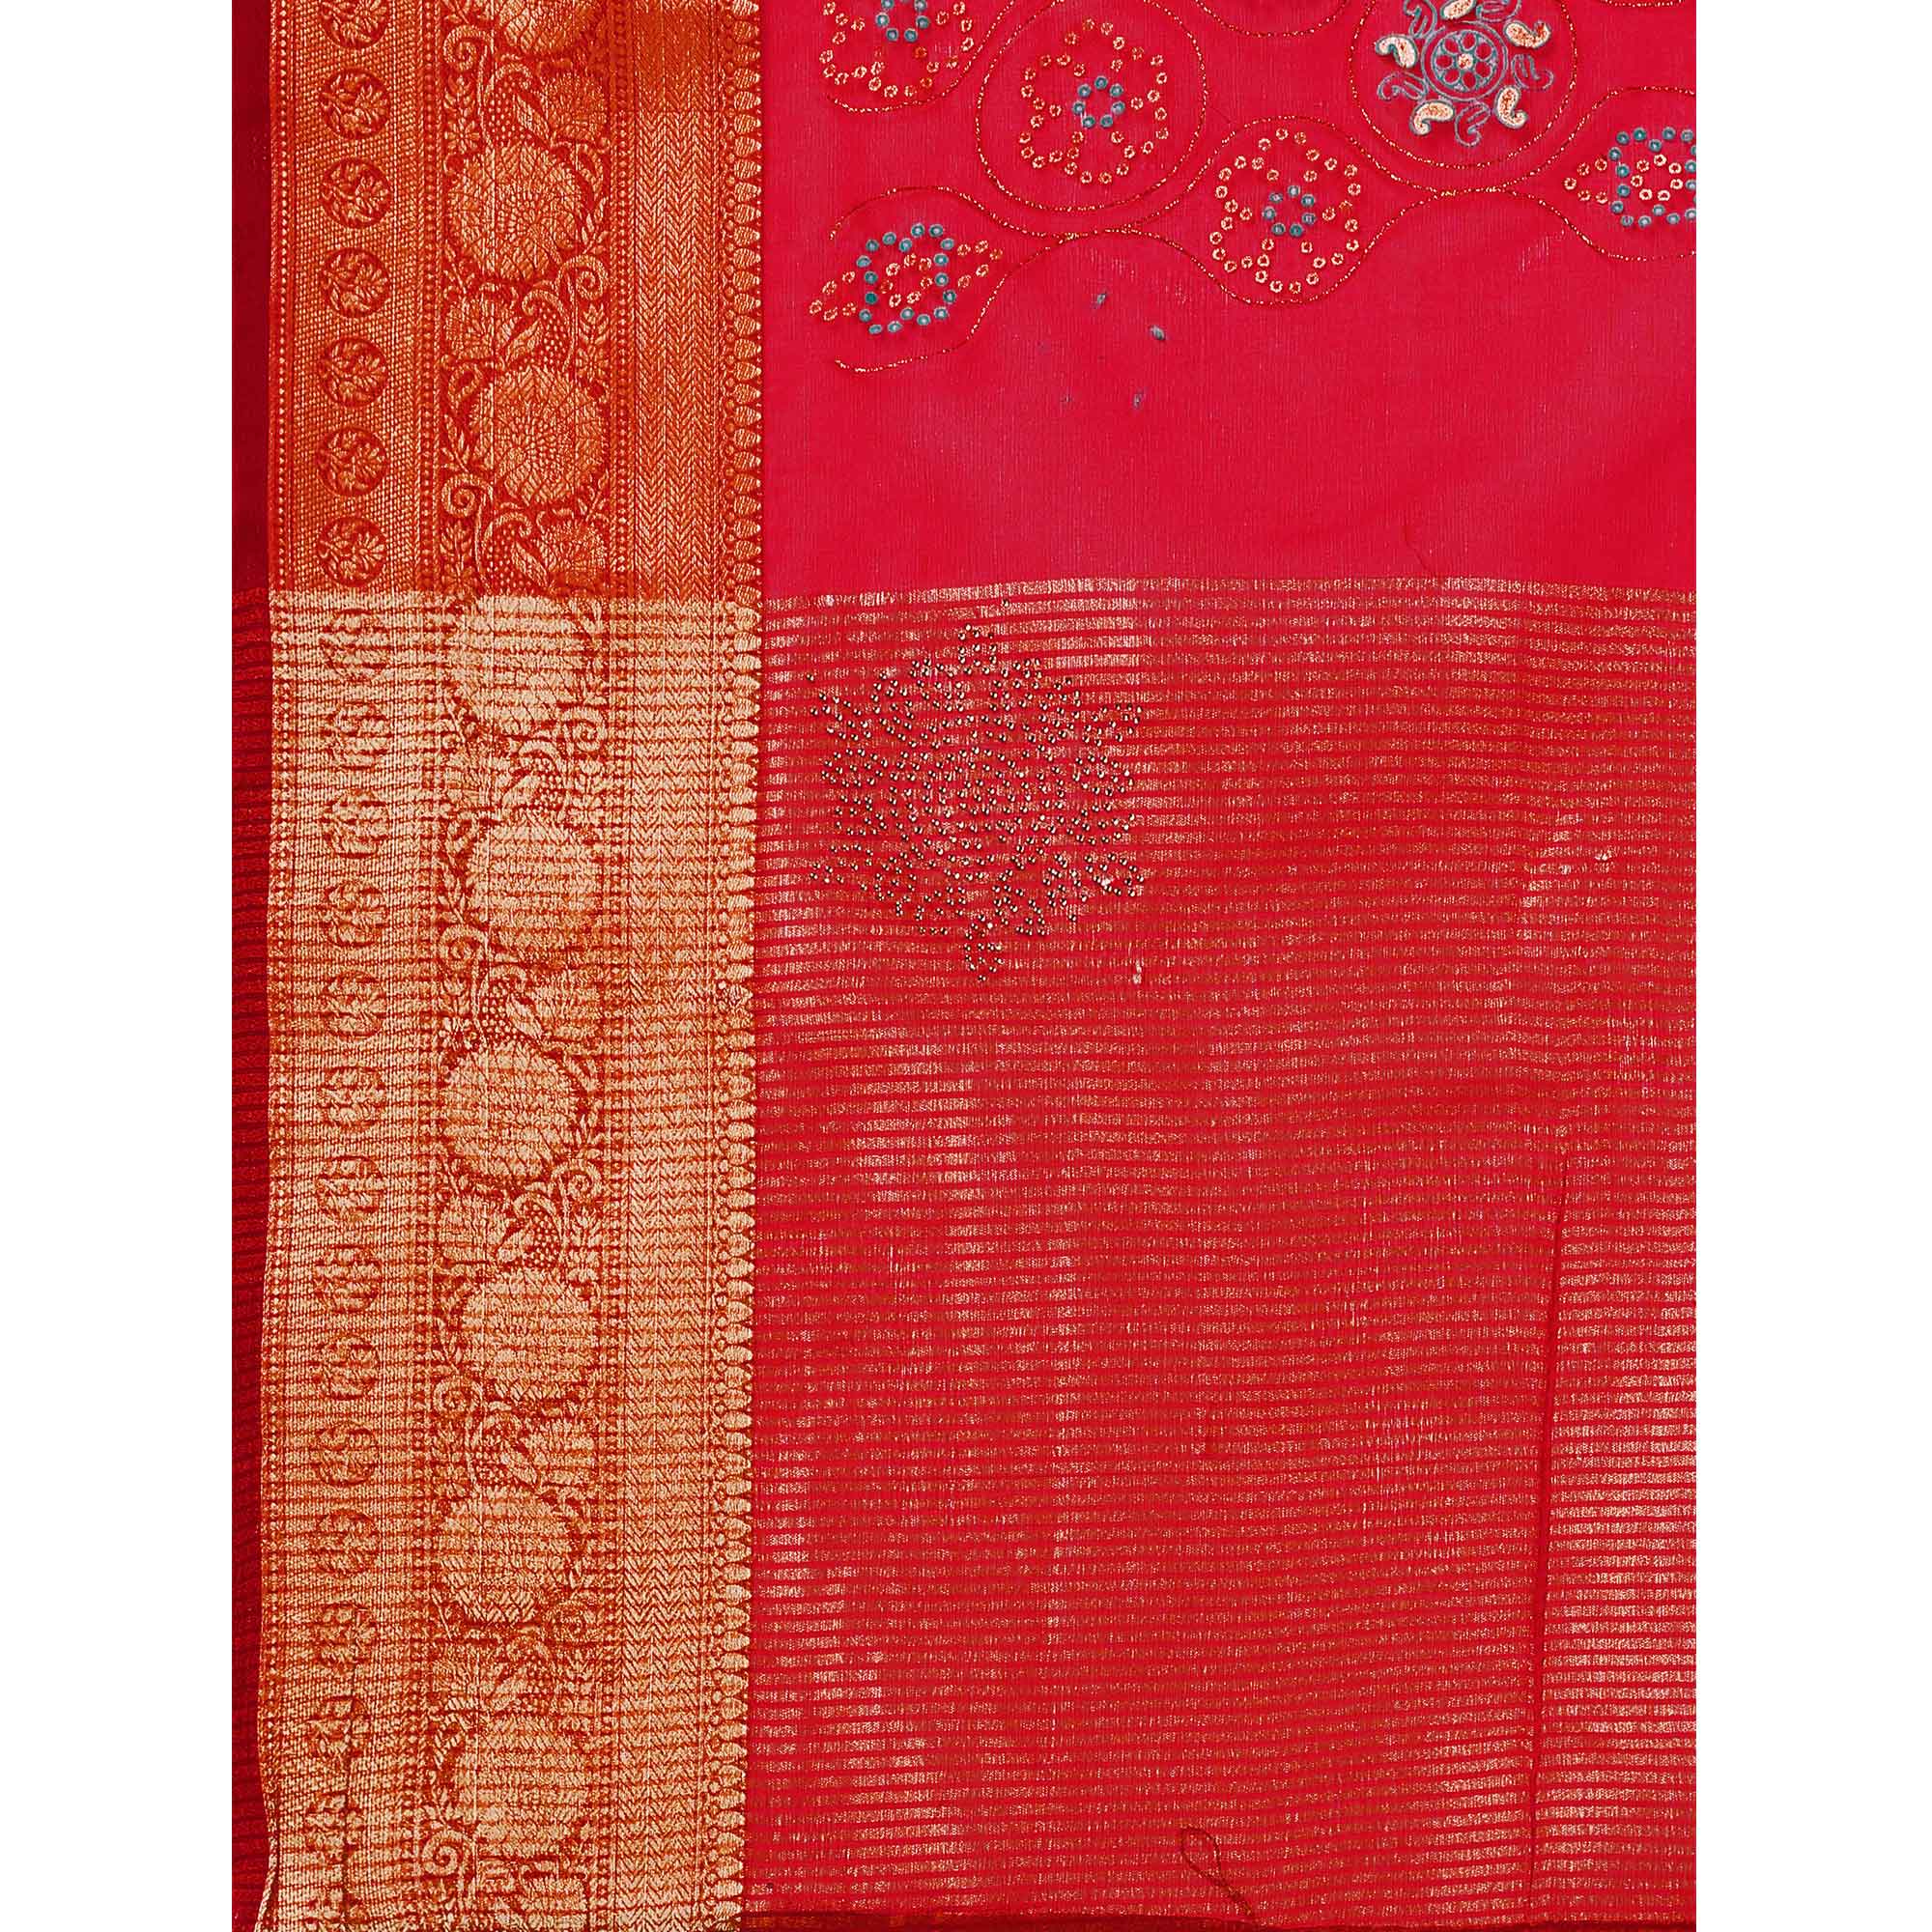 Red Bandhani Printed Organza Saree With Woven Border